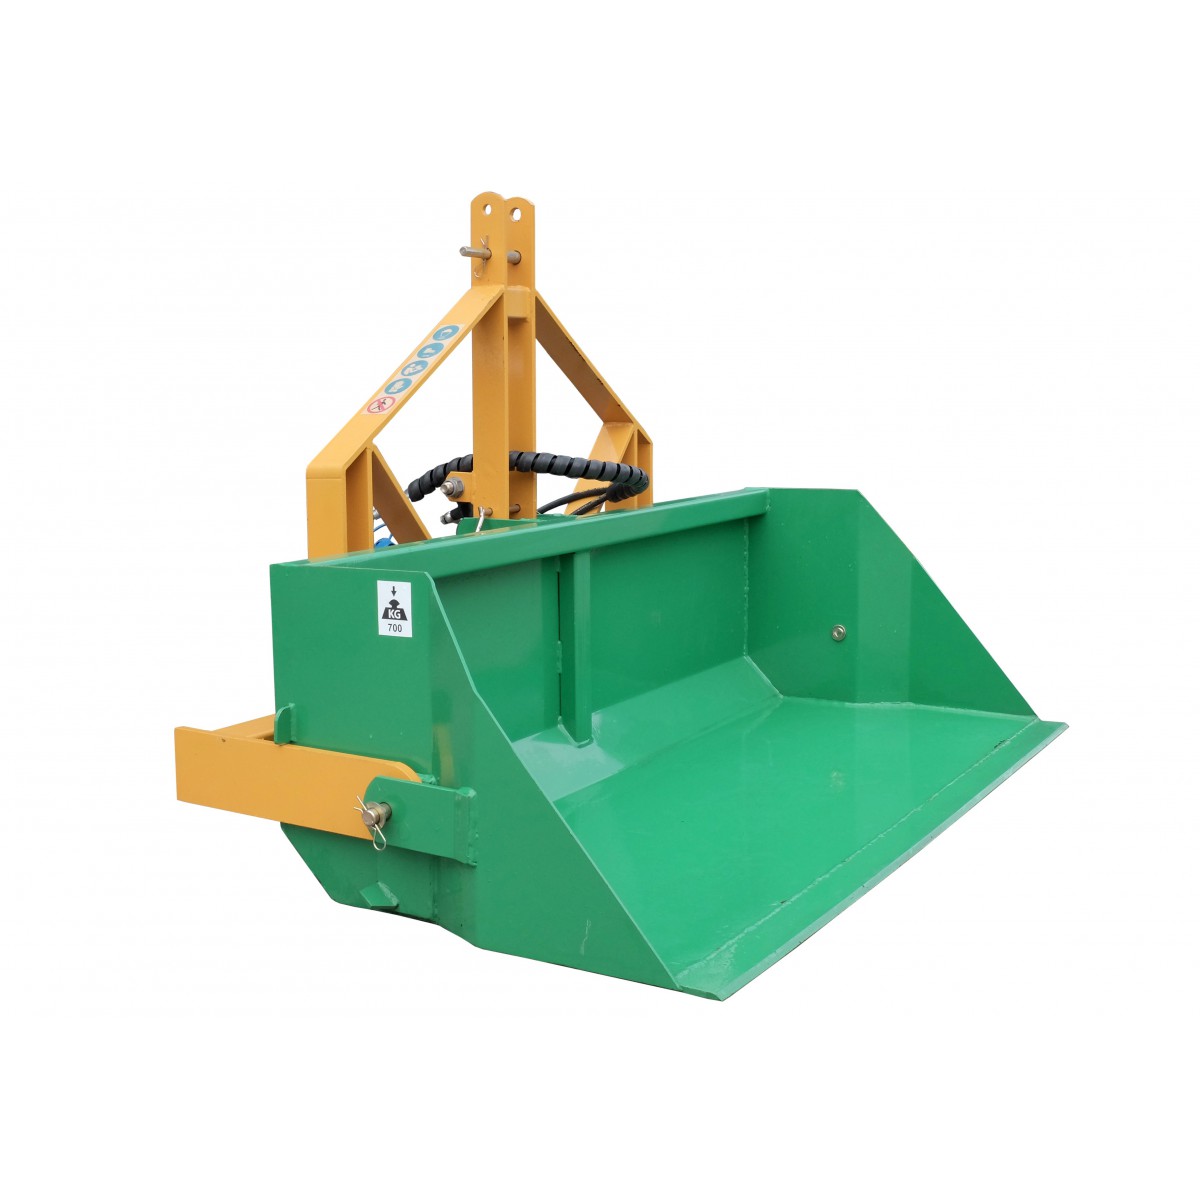 140 cm transport box with TRX hydraulic tipper